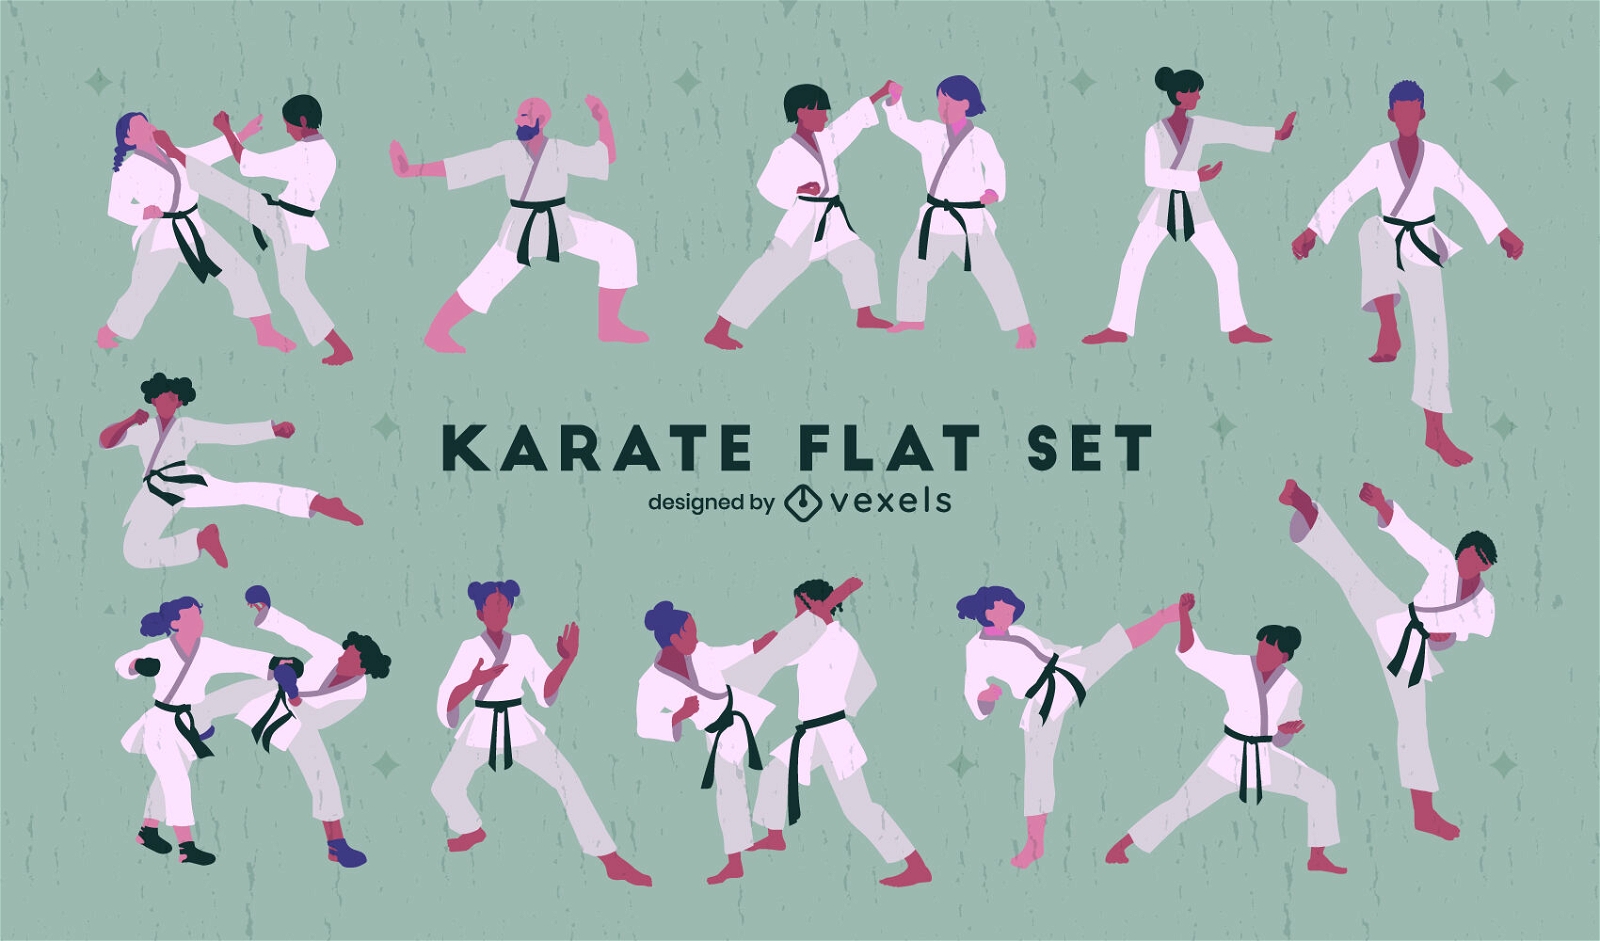 Las artes marciales de karate mueven a la gente.